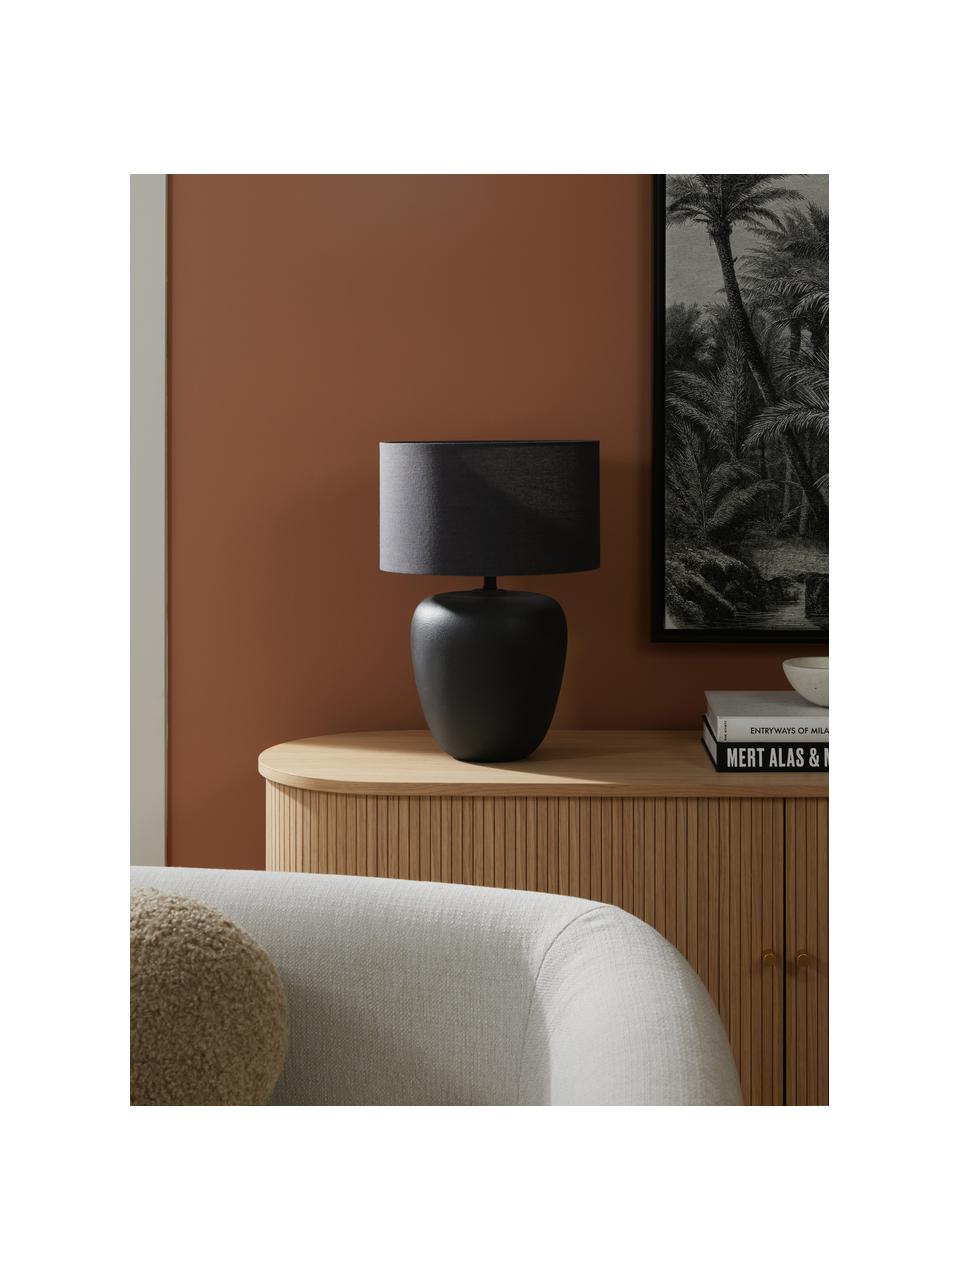 Grote keramische tafellamp Eileen in zwart, Lampenkap: linnen (100 % polyester), Lampvoet: keramiek, Zwart, Ø 33 x H 48 cm